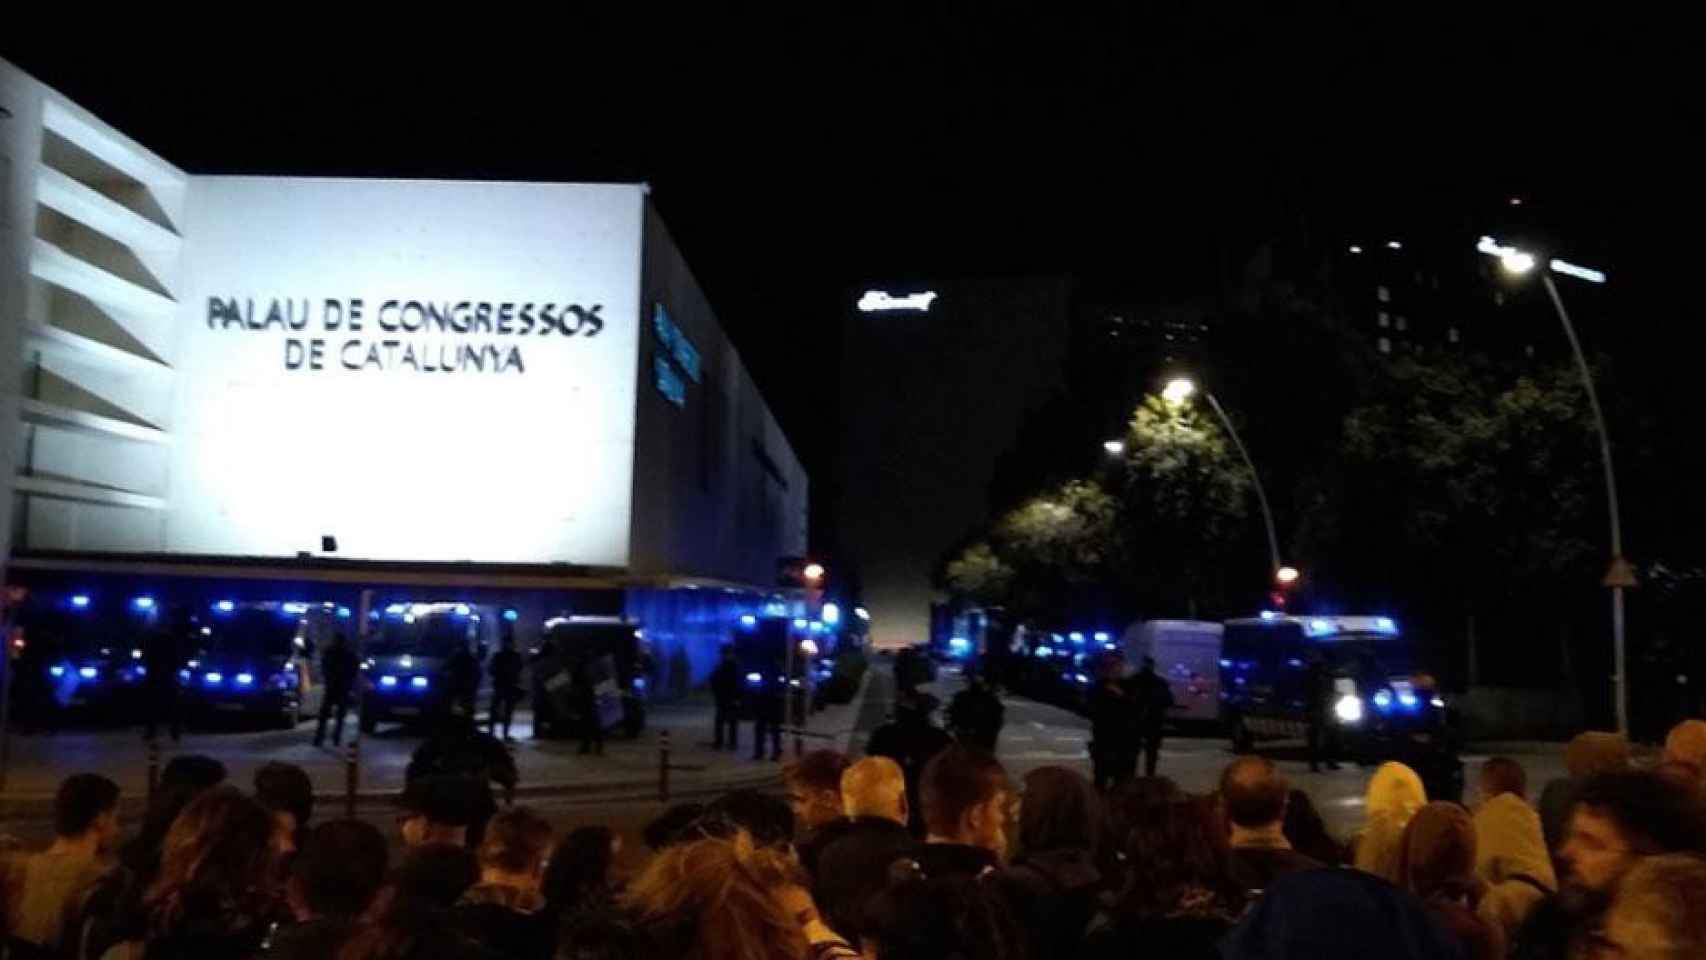 Manifestantes independentistas ante el cordón policial en el Palau de Congressos de Catalunya / CDR